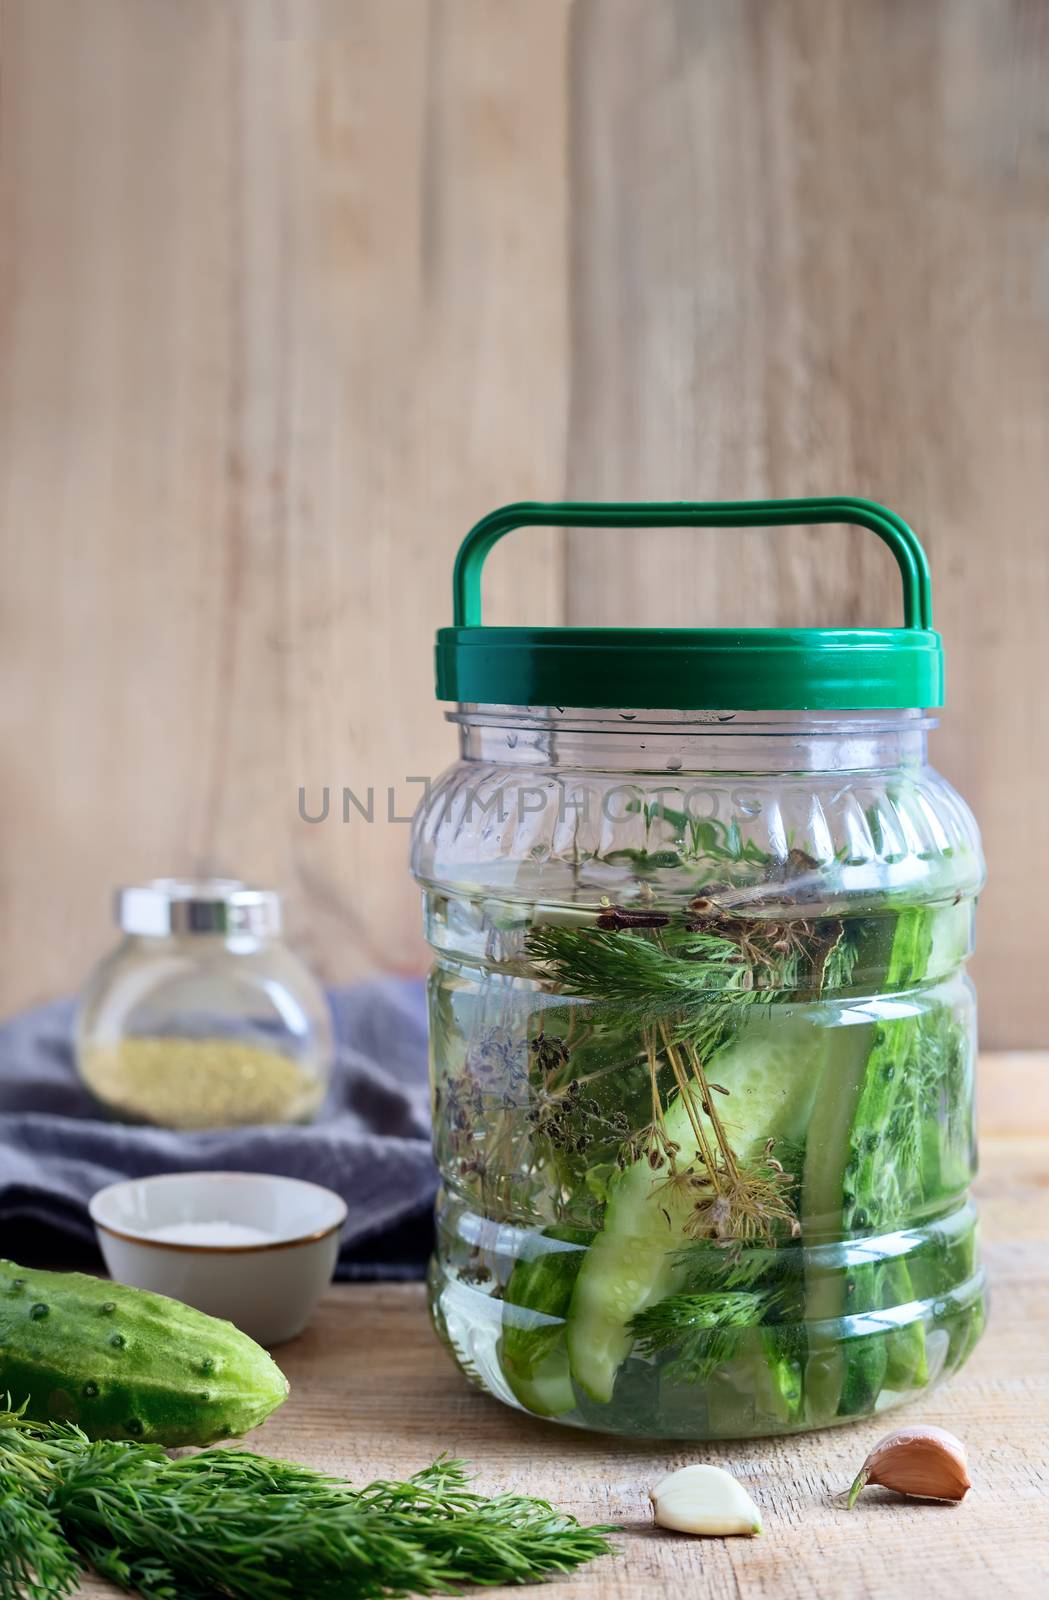 Pickles in a glass jar with cucumber brine by georgina198